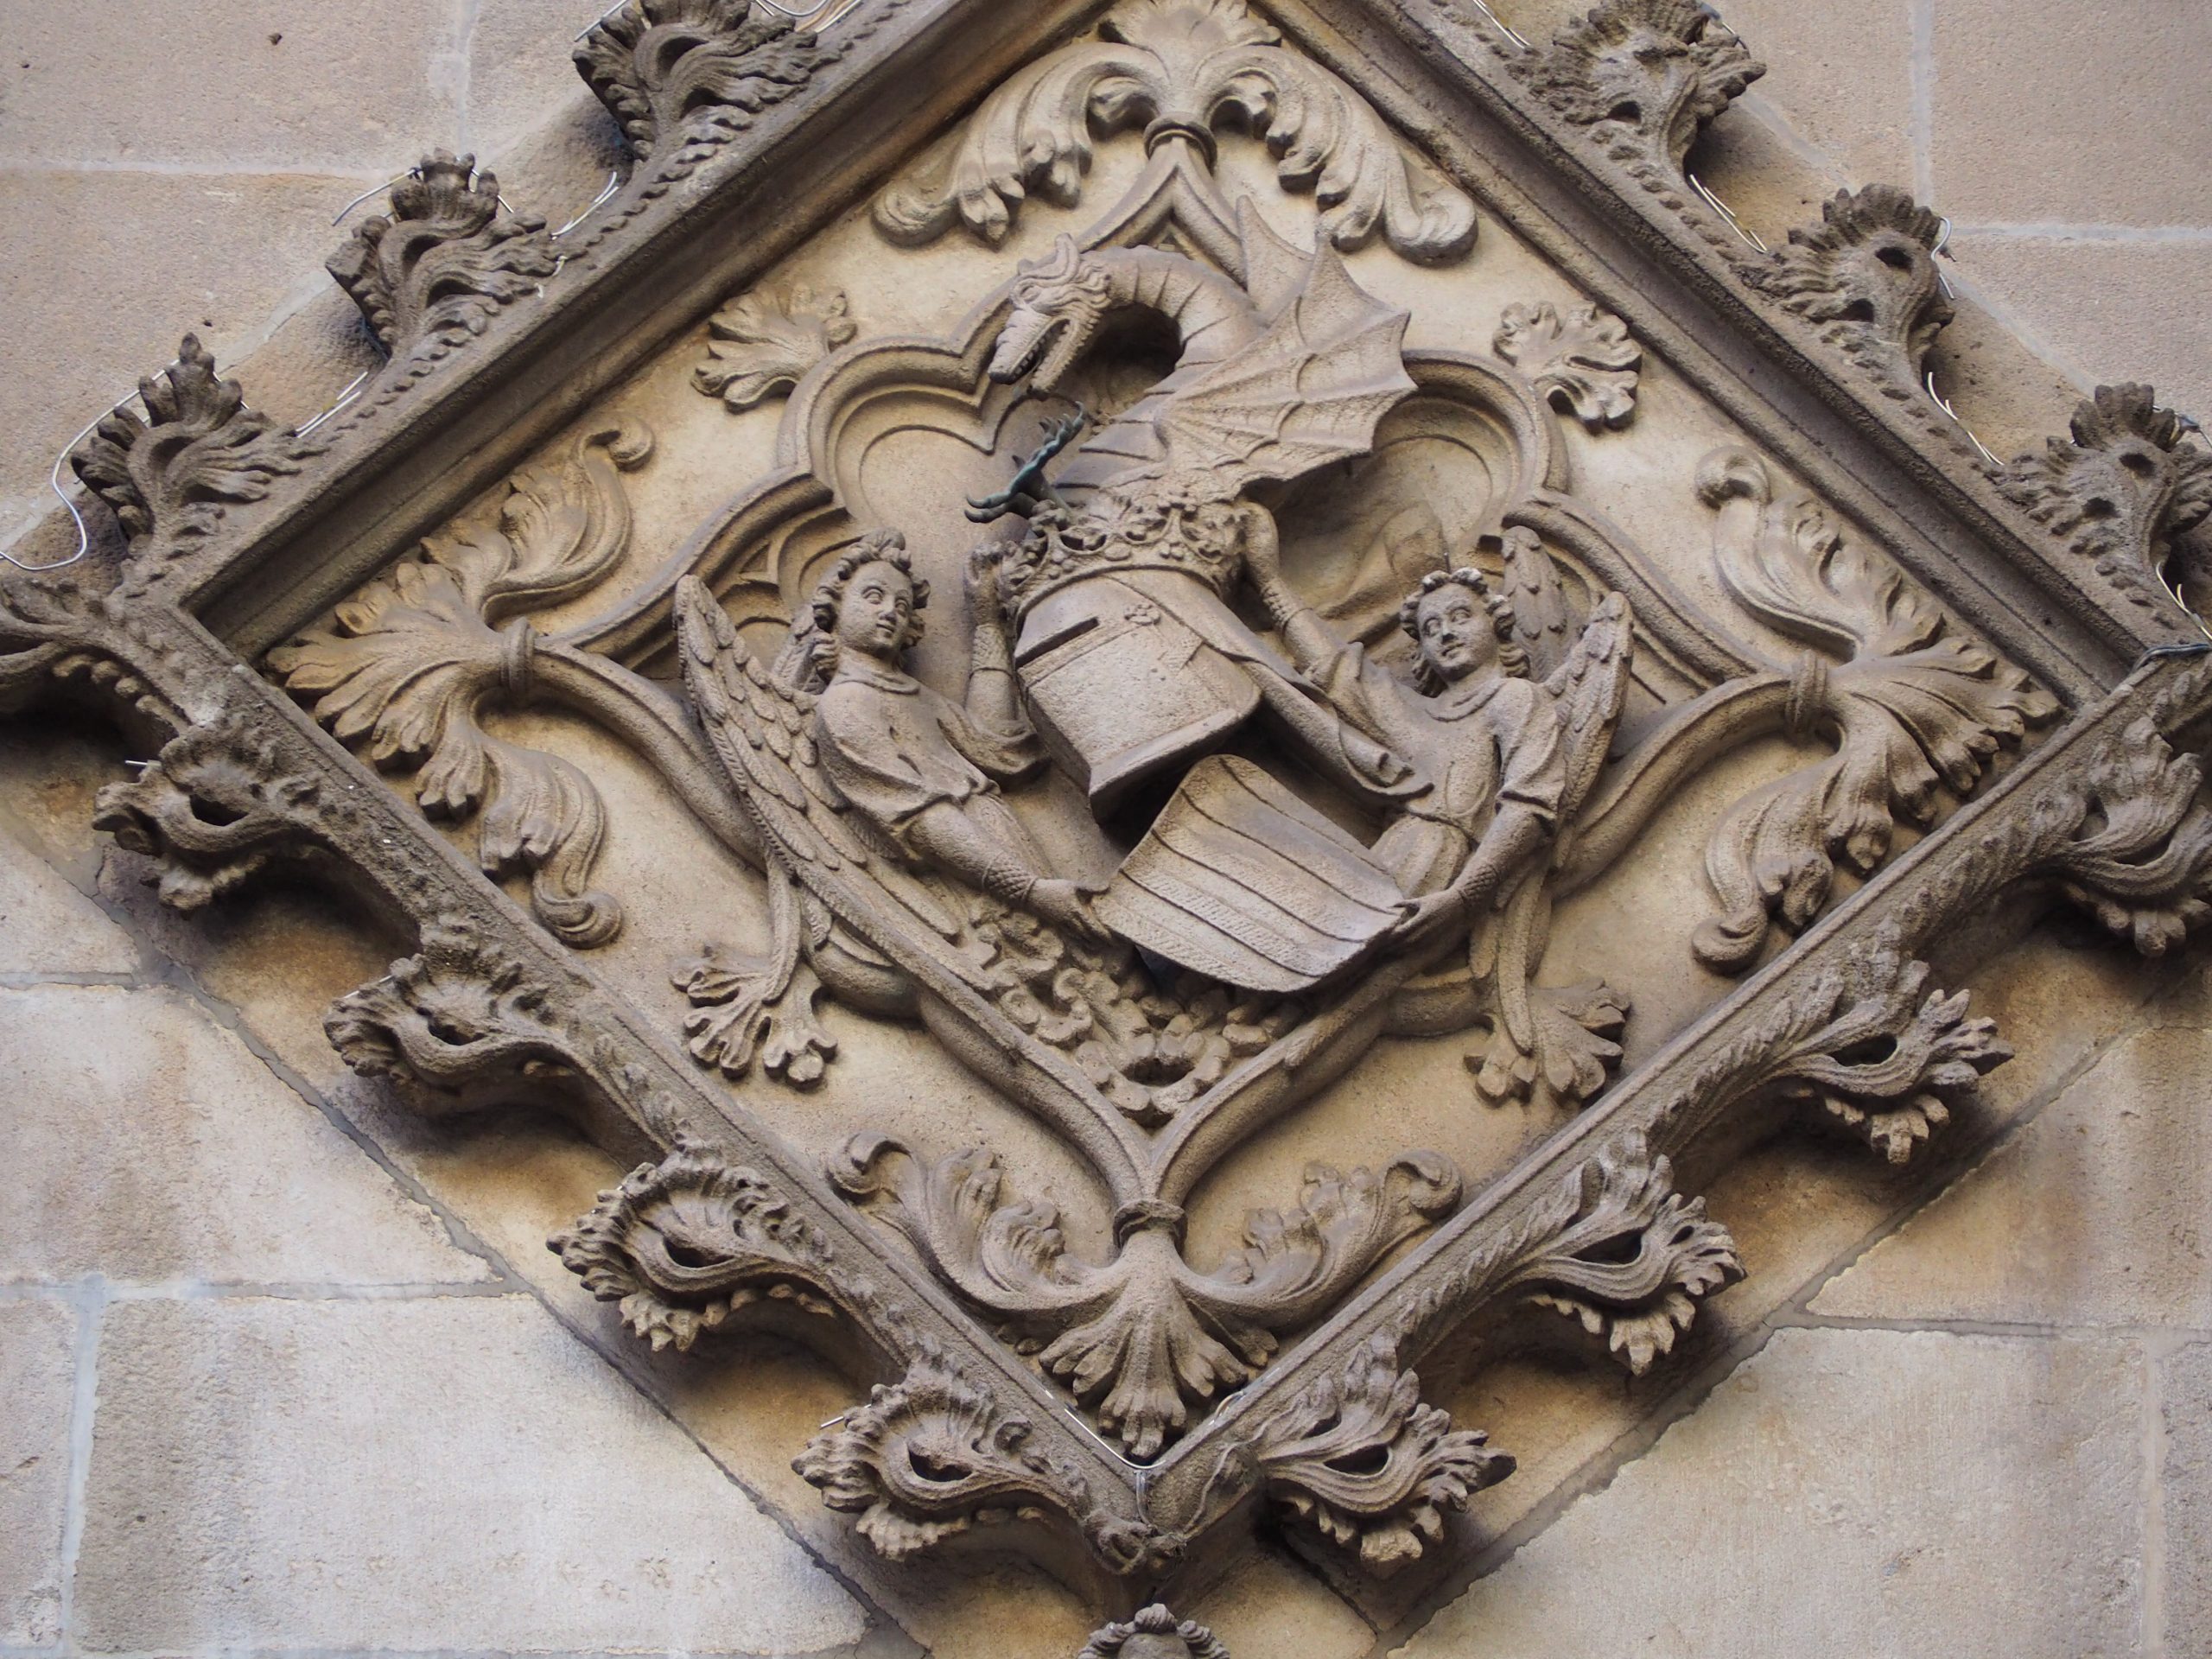 Escudo de piedra de Jaume I en la fachada del Ayuntamiento de Barcelona. El barrio gótico.